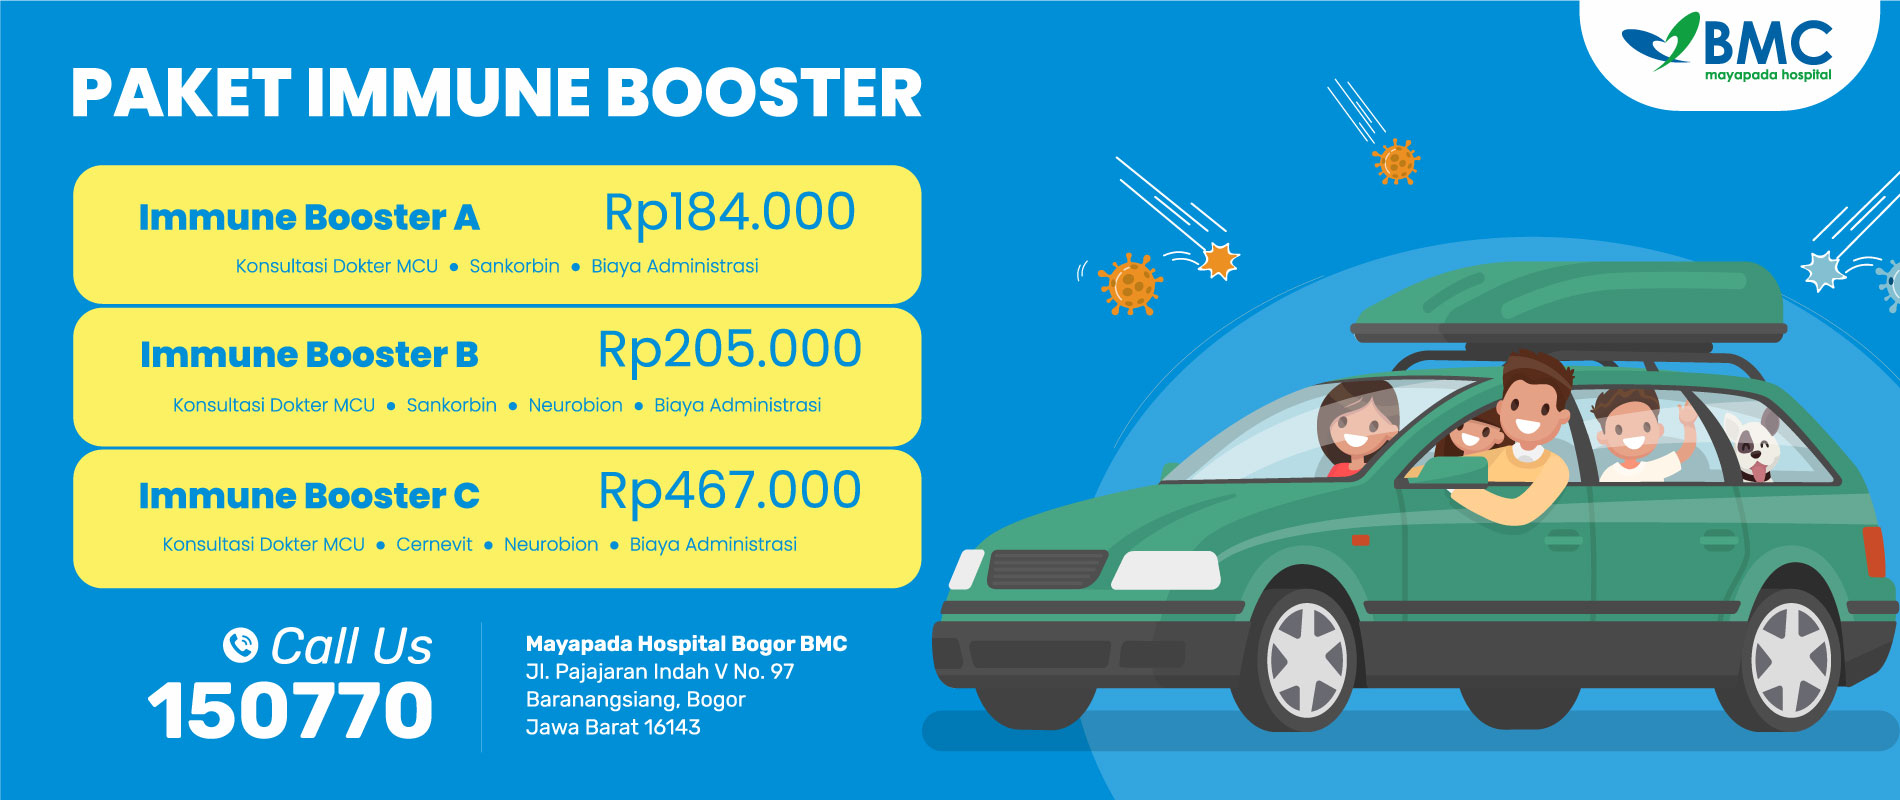 Paket Immune Booster di BMC (Bogor) IMG